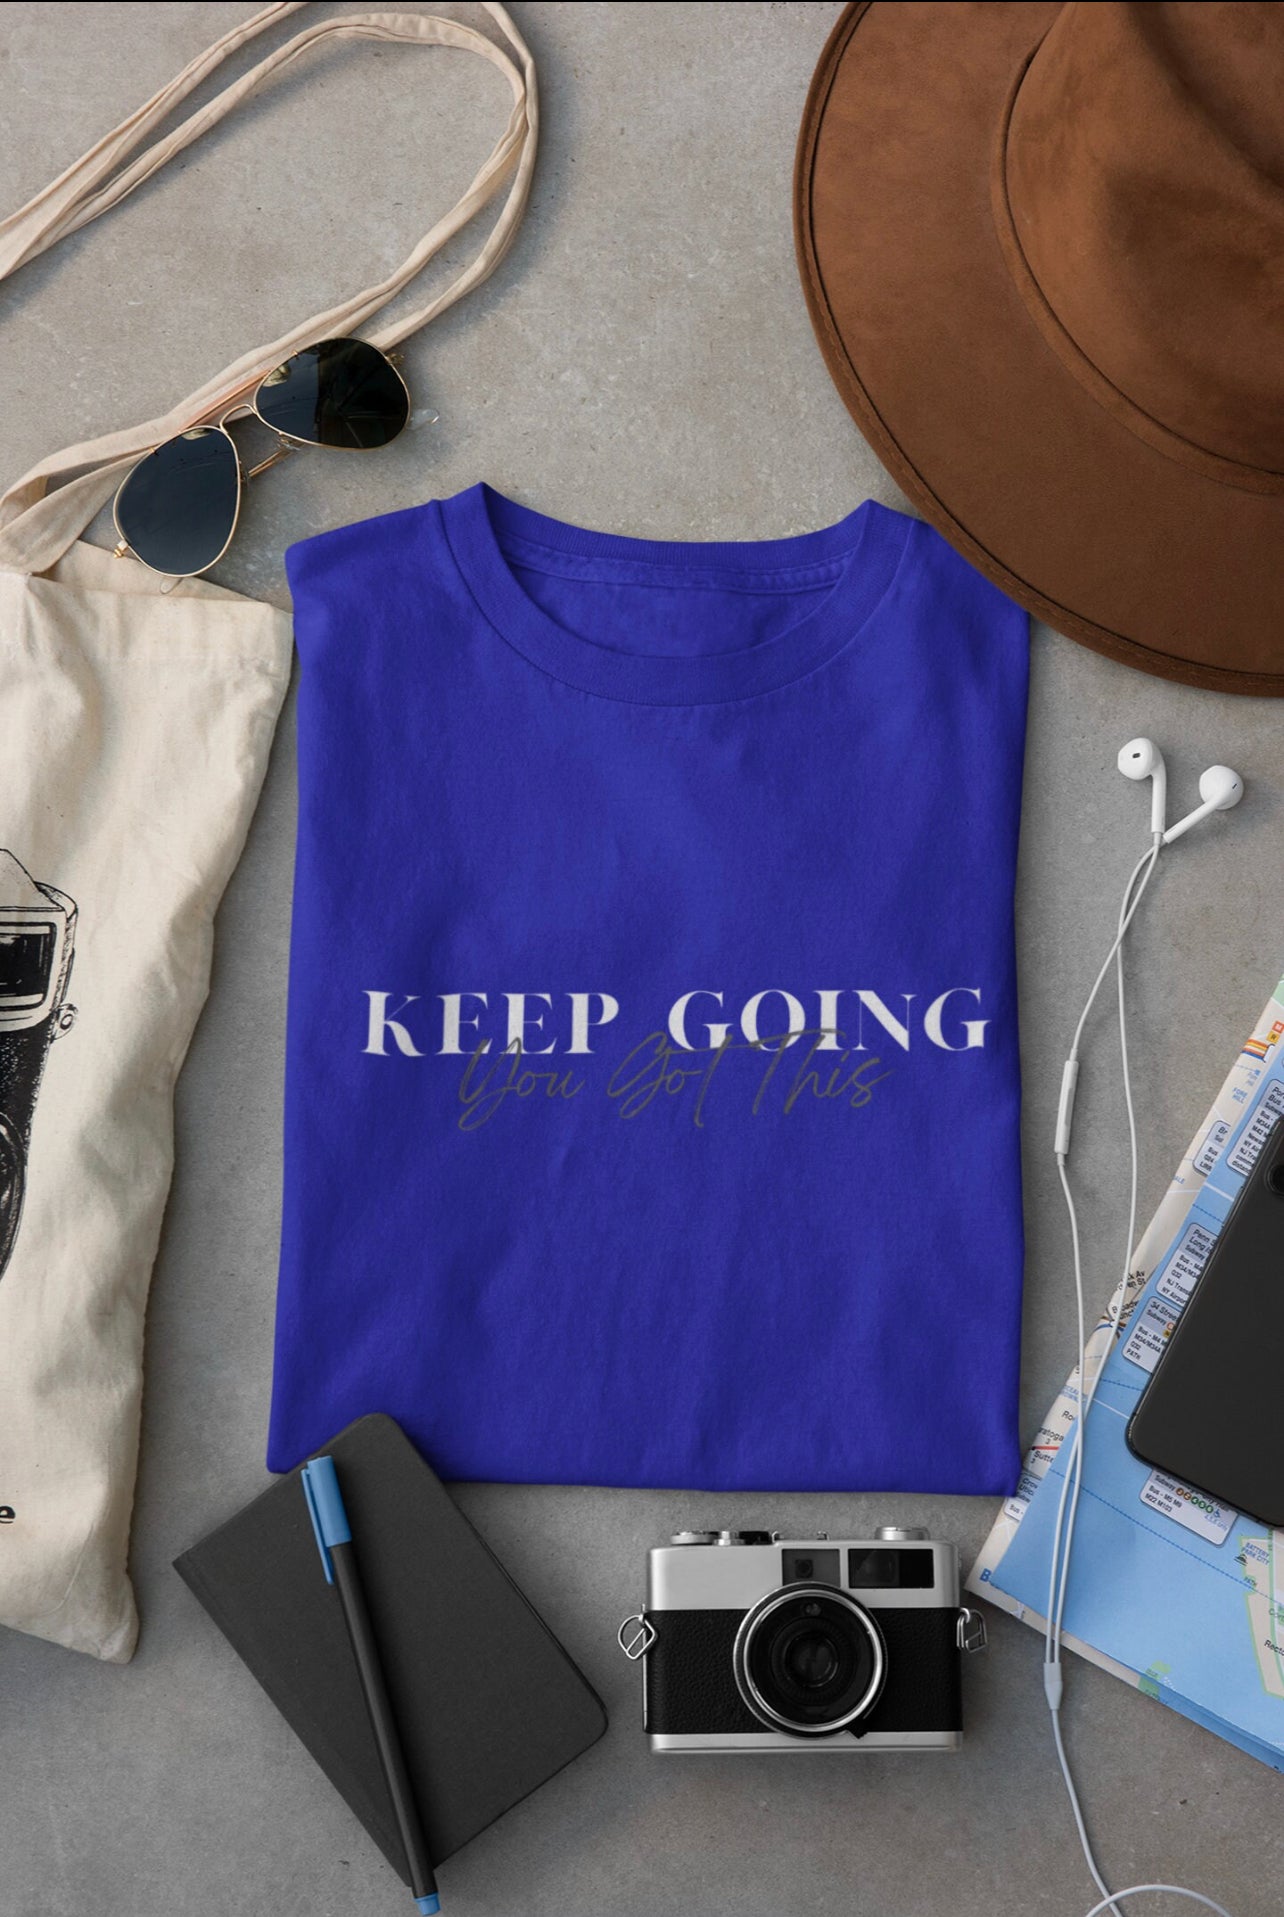 Keep Going You Got This Motivational T-Shirt, Christian Shirt, Inspirational Tee